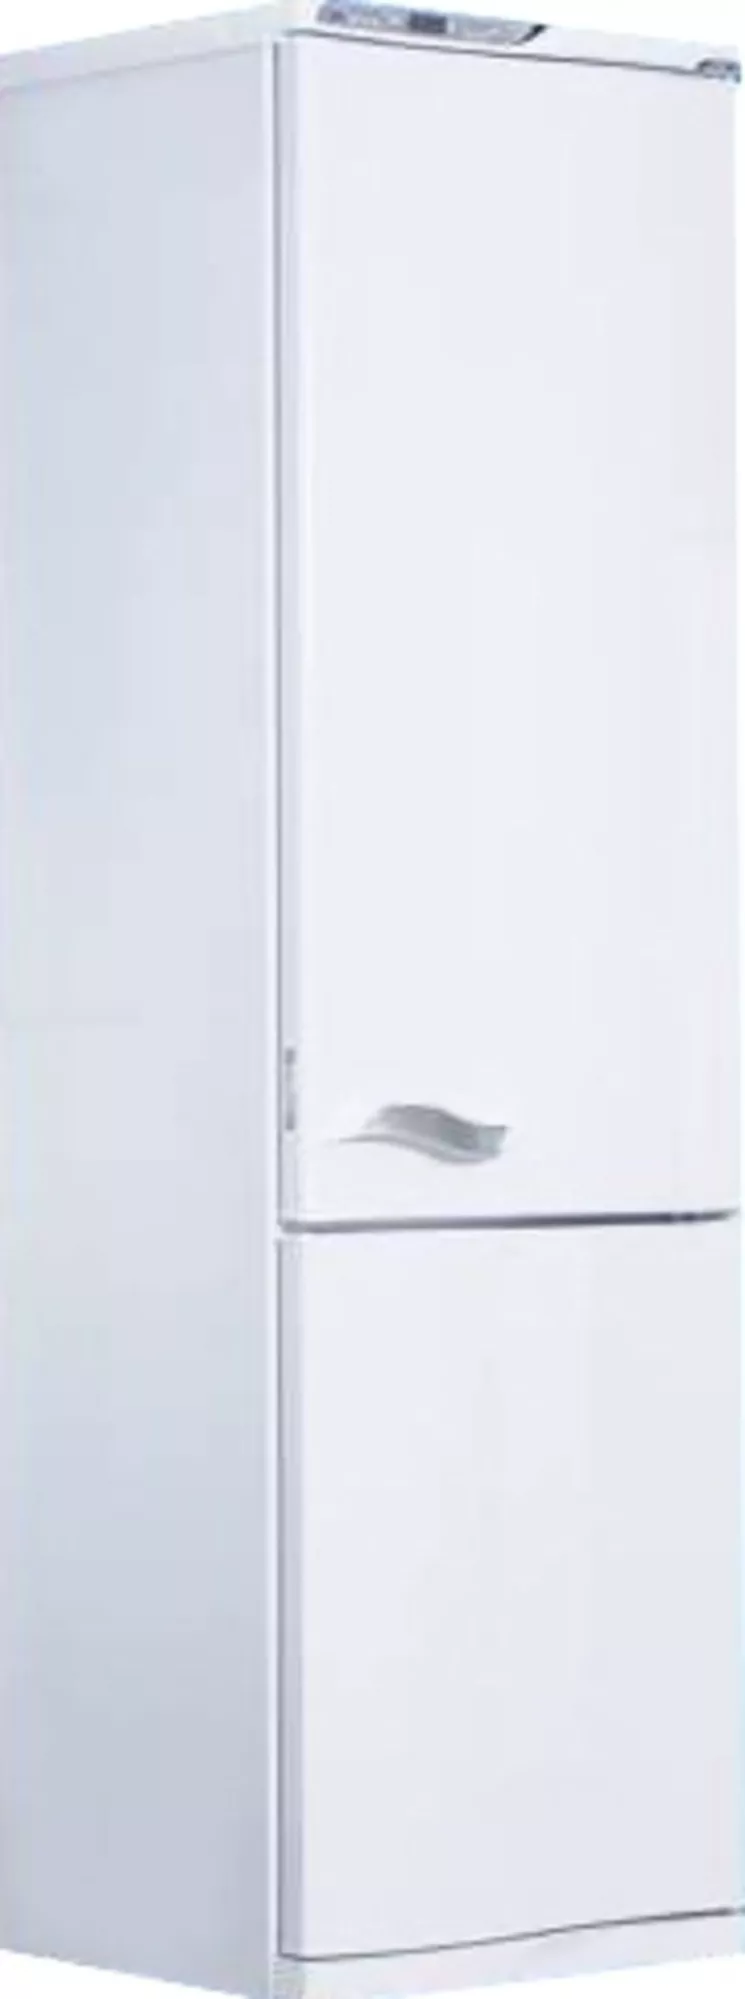 Двухкамерный холодильник АТЛАНТ MXM-1843-62,  новый,  в упаковке. 4